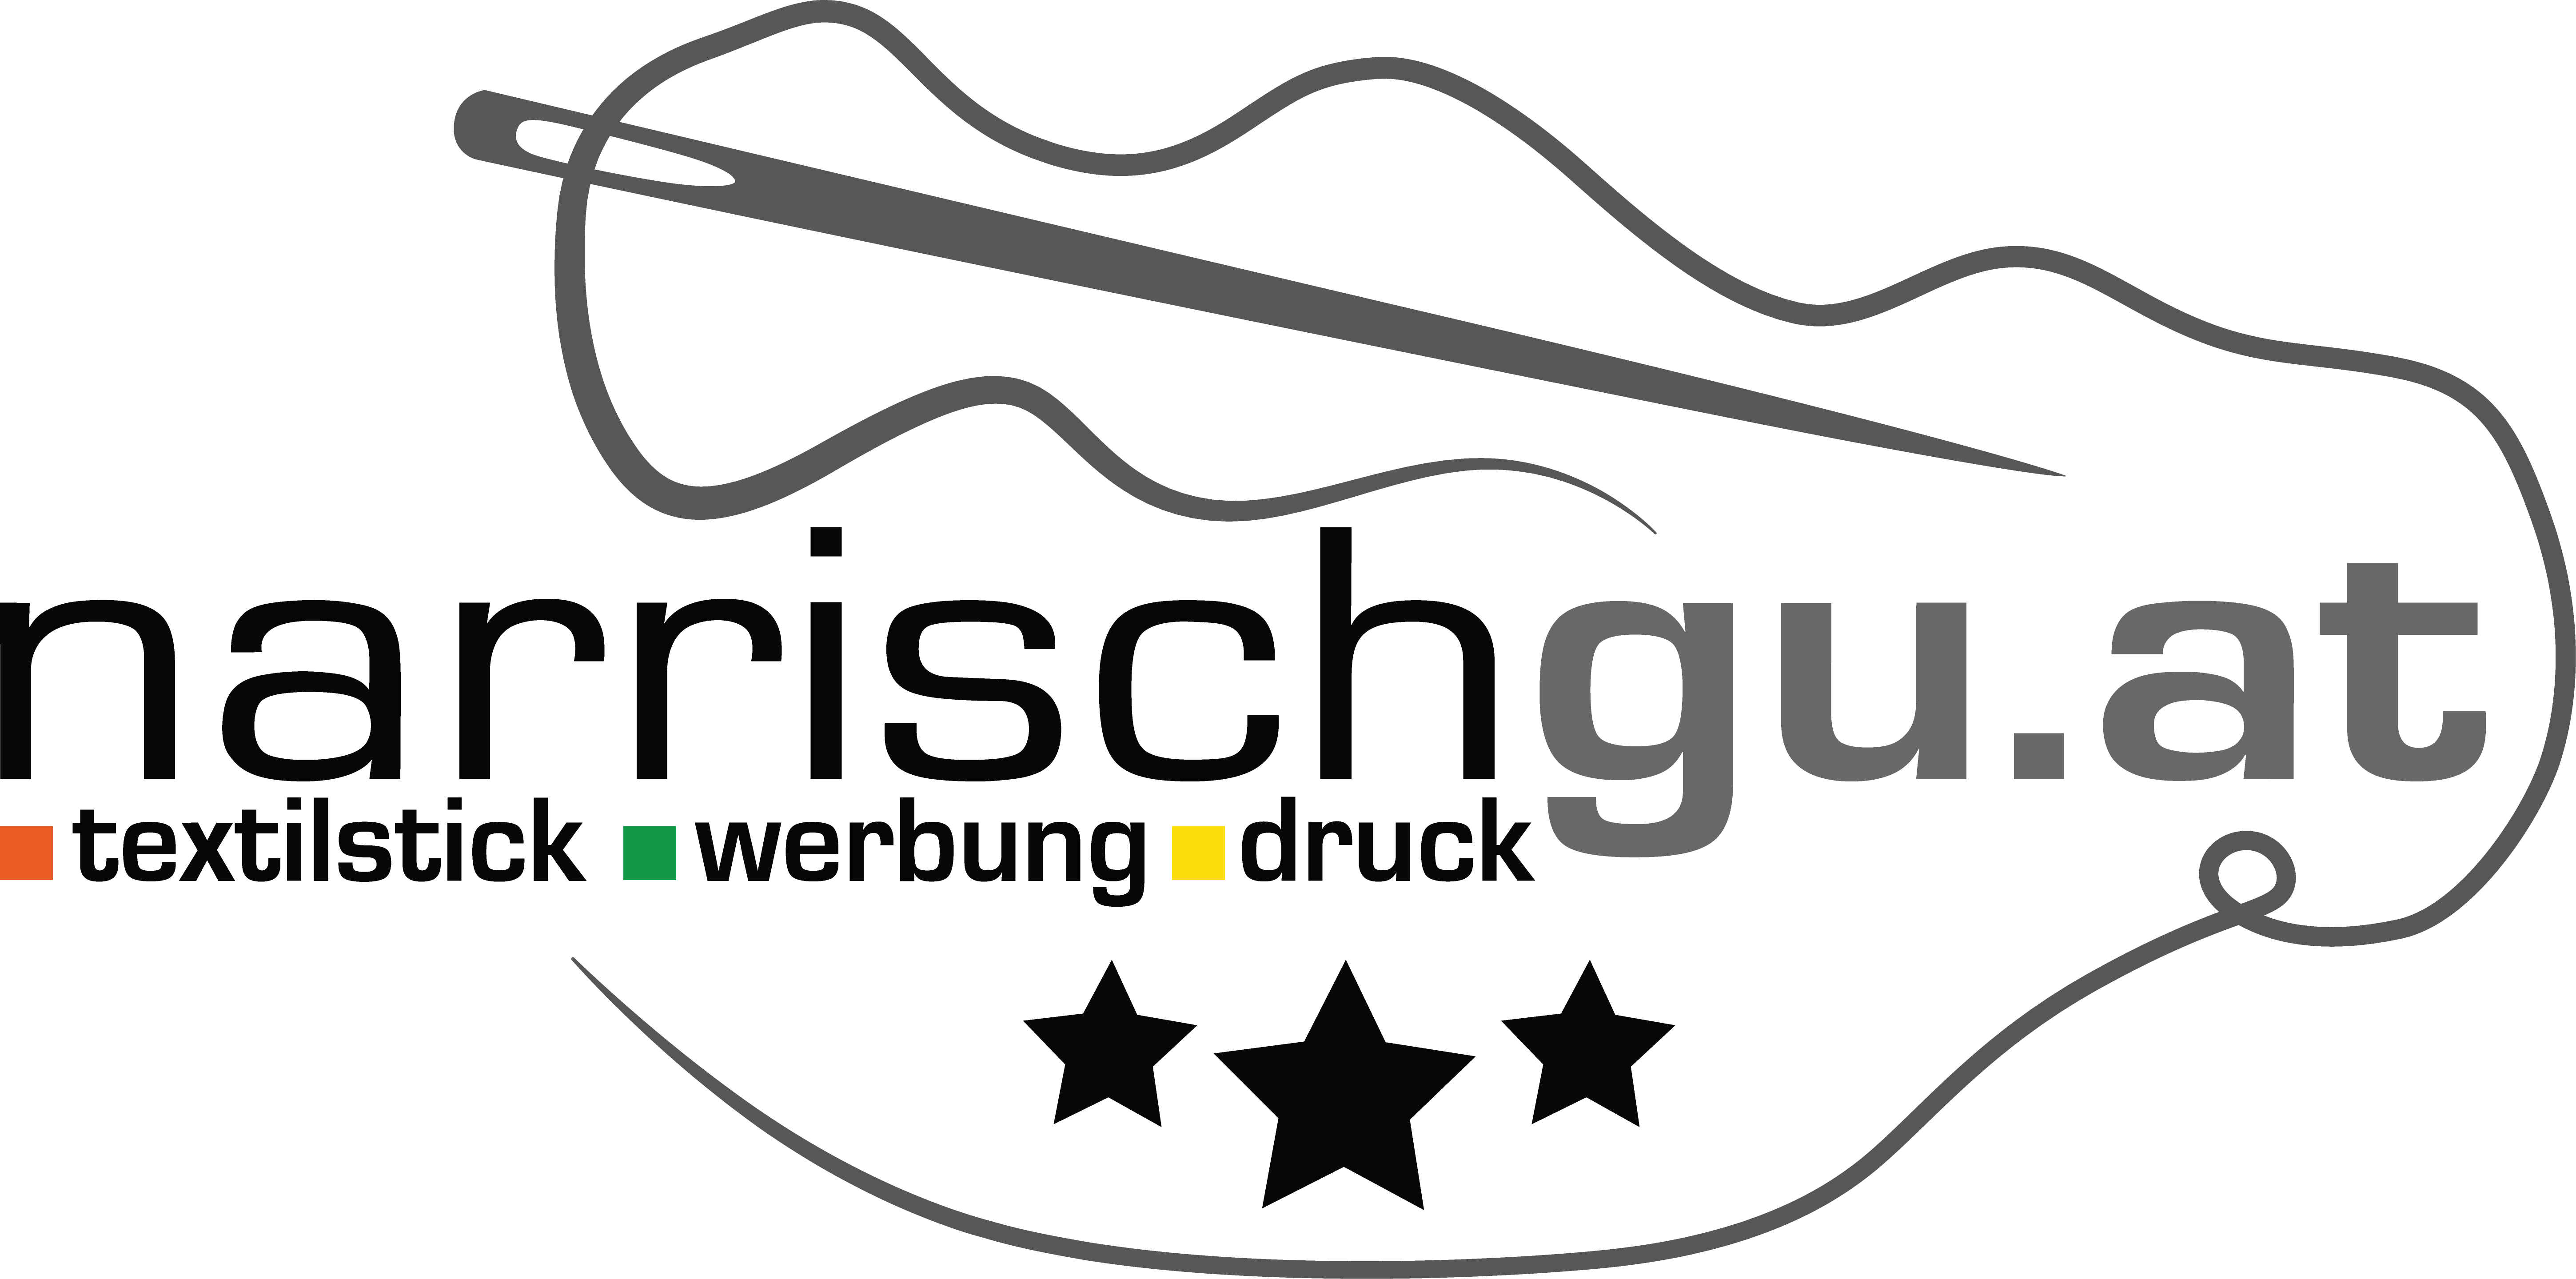 narrischguat GmbH